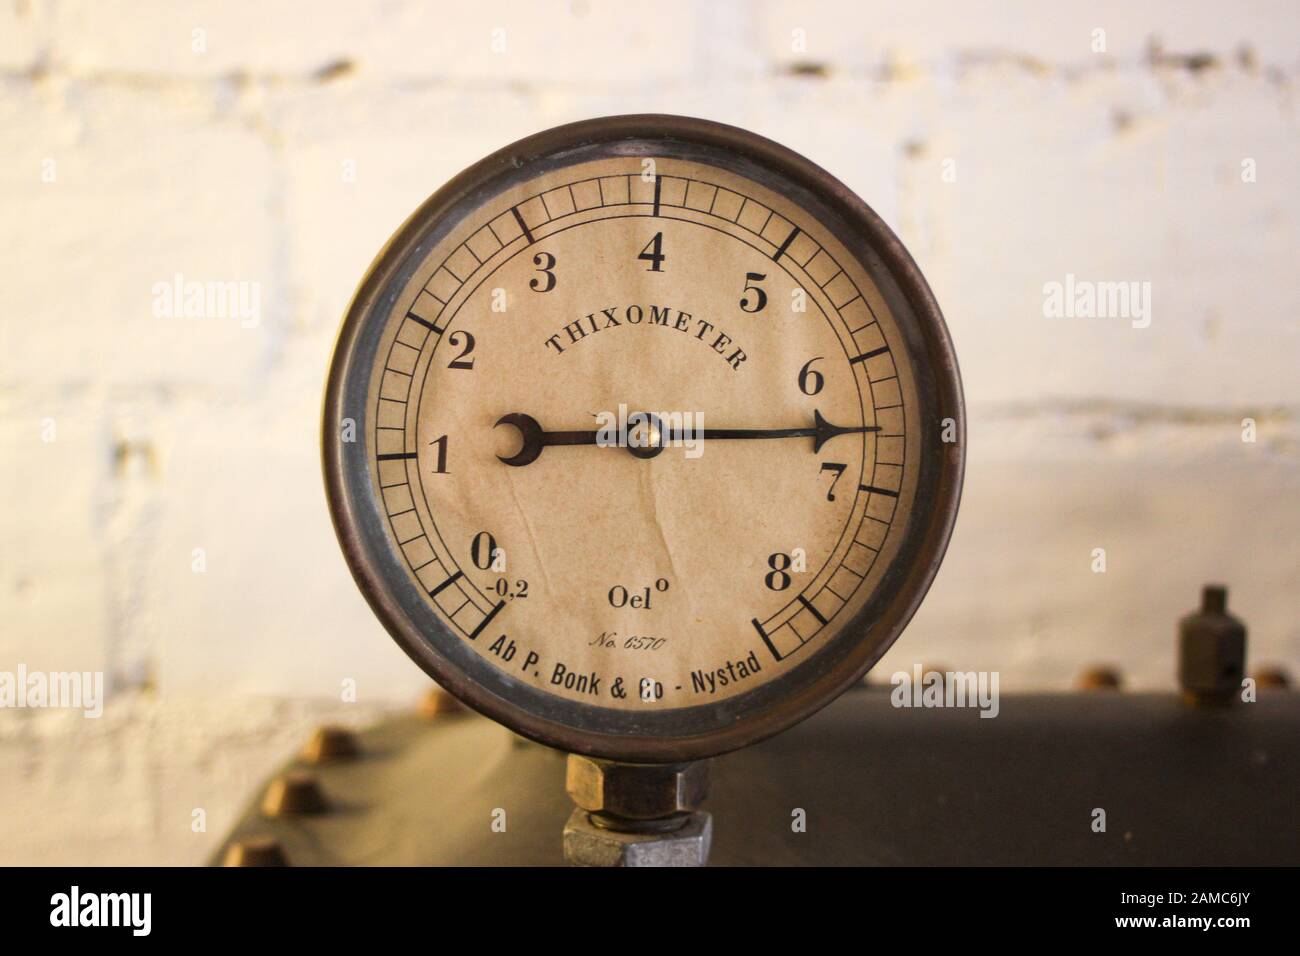 Thixometer - detalle de las obras de arte de Alvar Gullichsen en el Museo Bonk en Uusikaupunki, Finlandia Foto de stock